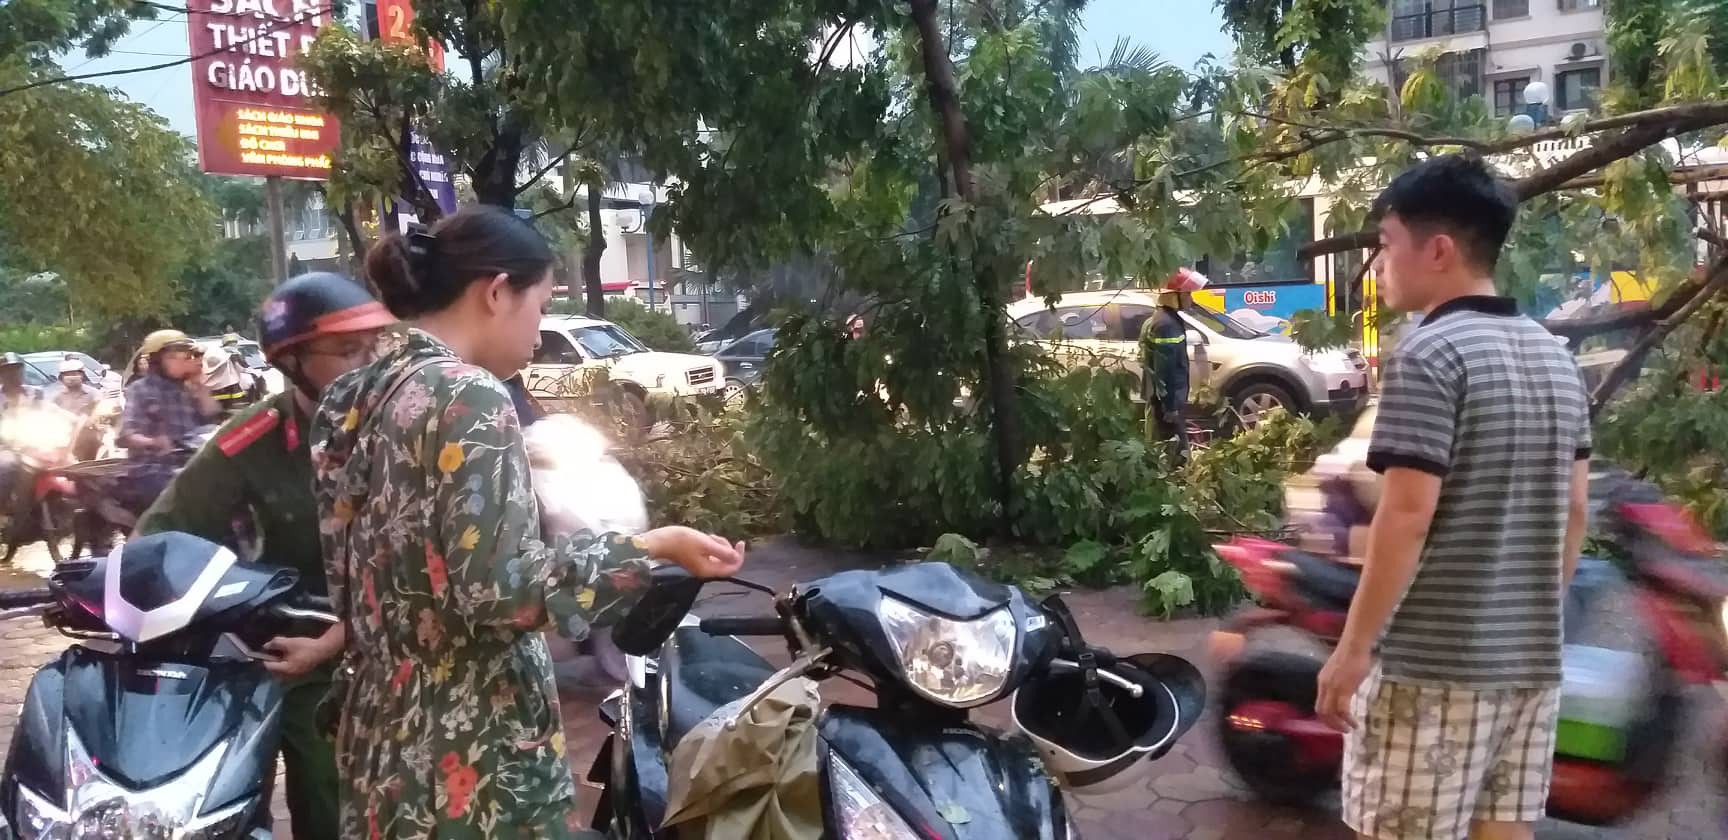 Bão số 4 đang di chuyển vào đất liền, Hà Nội mưa gió khủng khiếp, đã có 1 người chết do cây xanh đè trúng-6